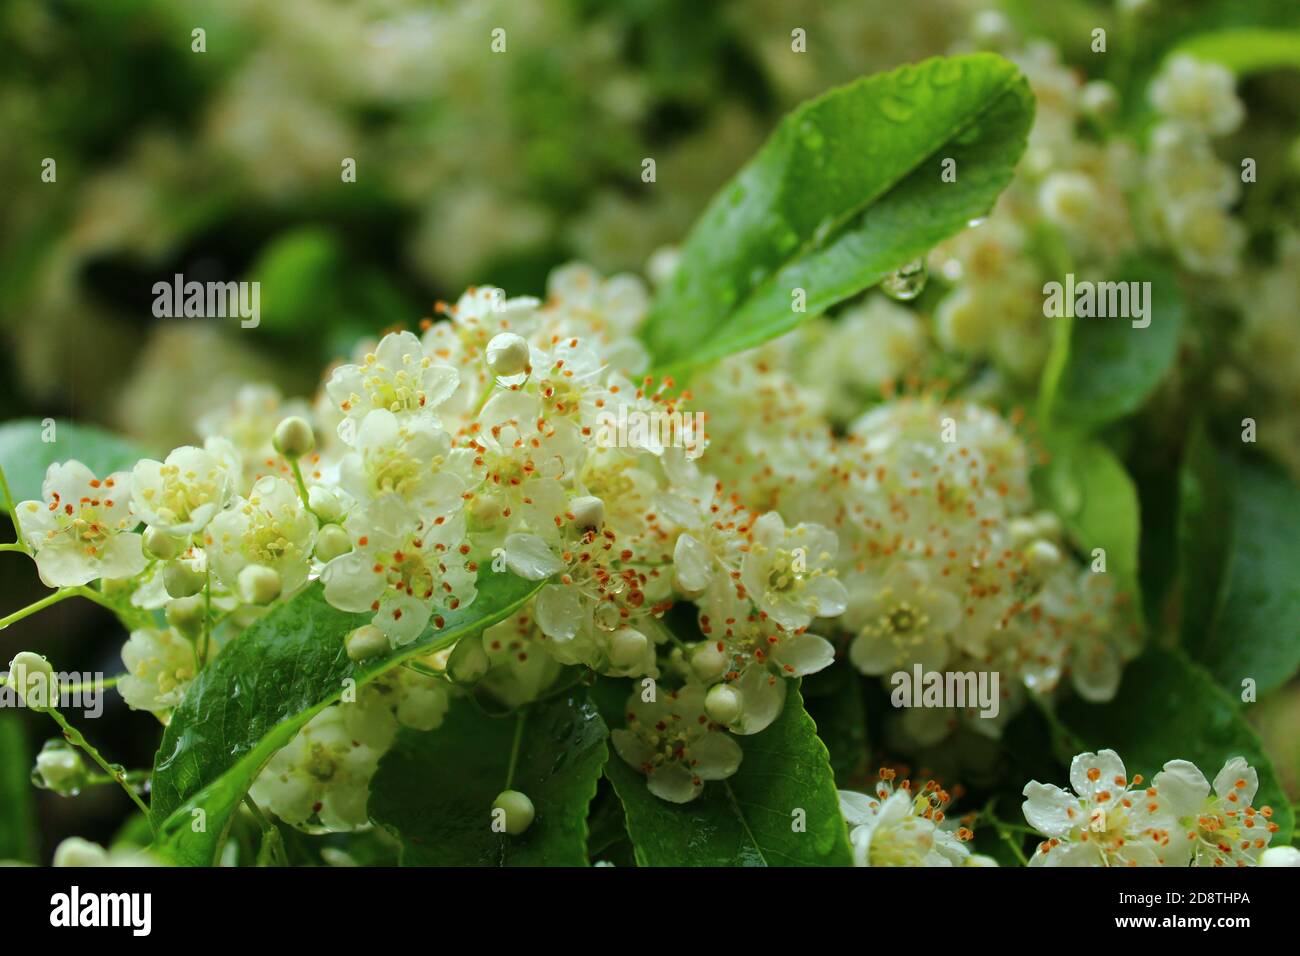 Bellissimi fiori bianchi in gruppo bagnati dalle gocce della pioggia Foto Stock